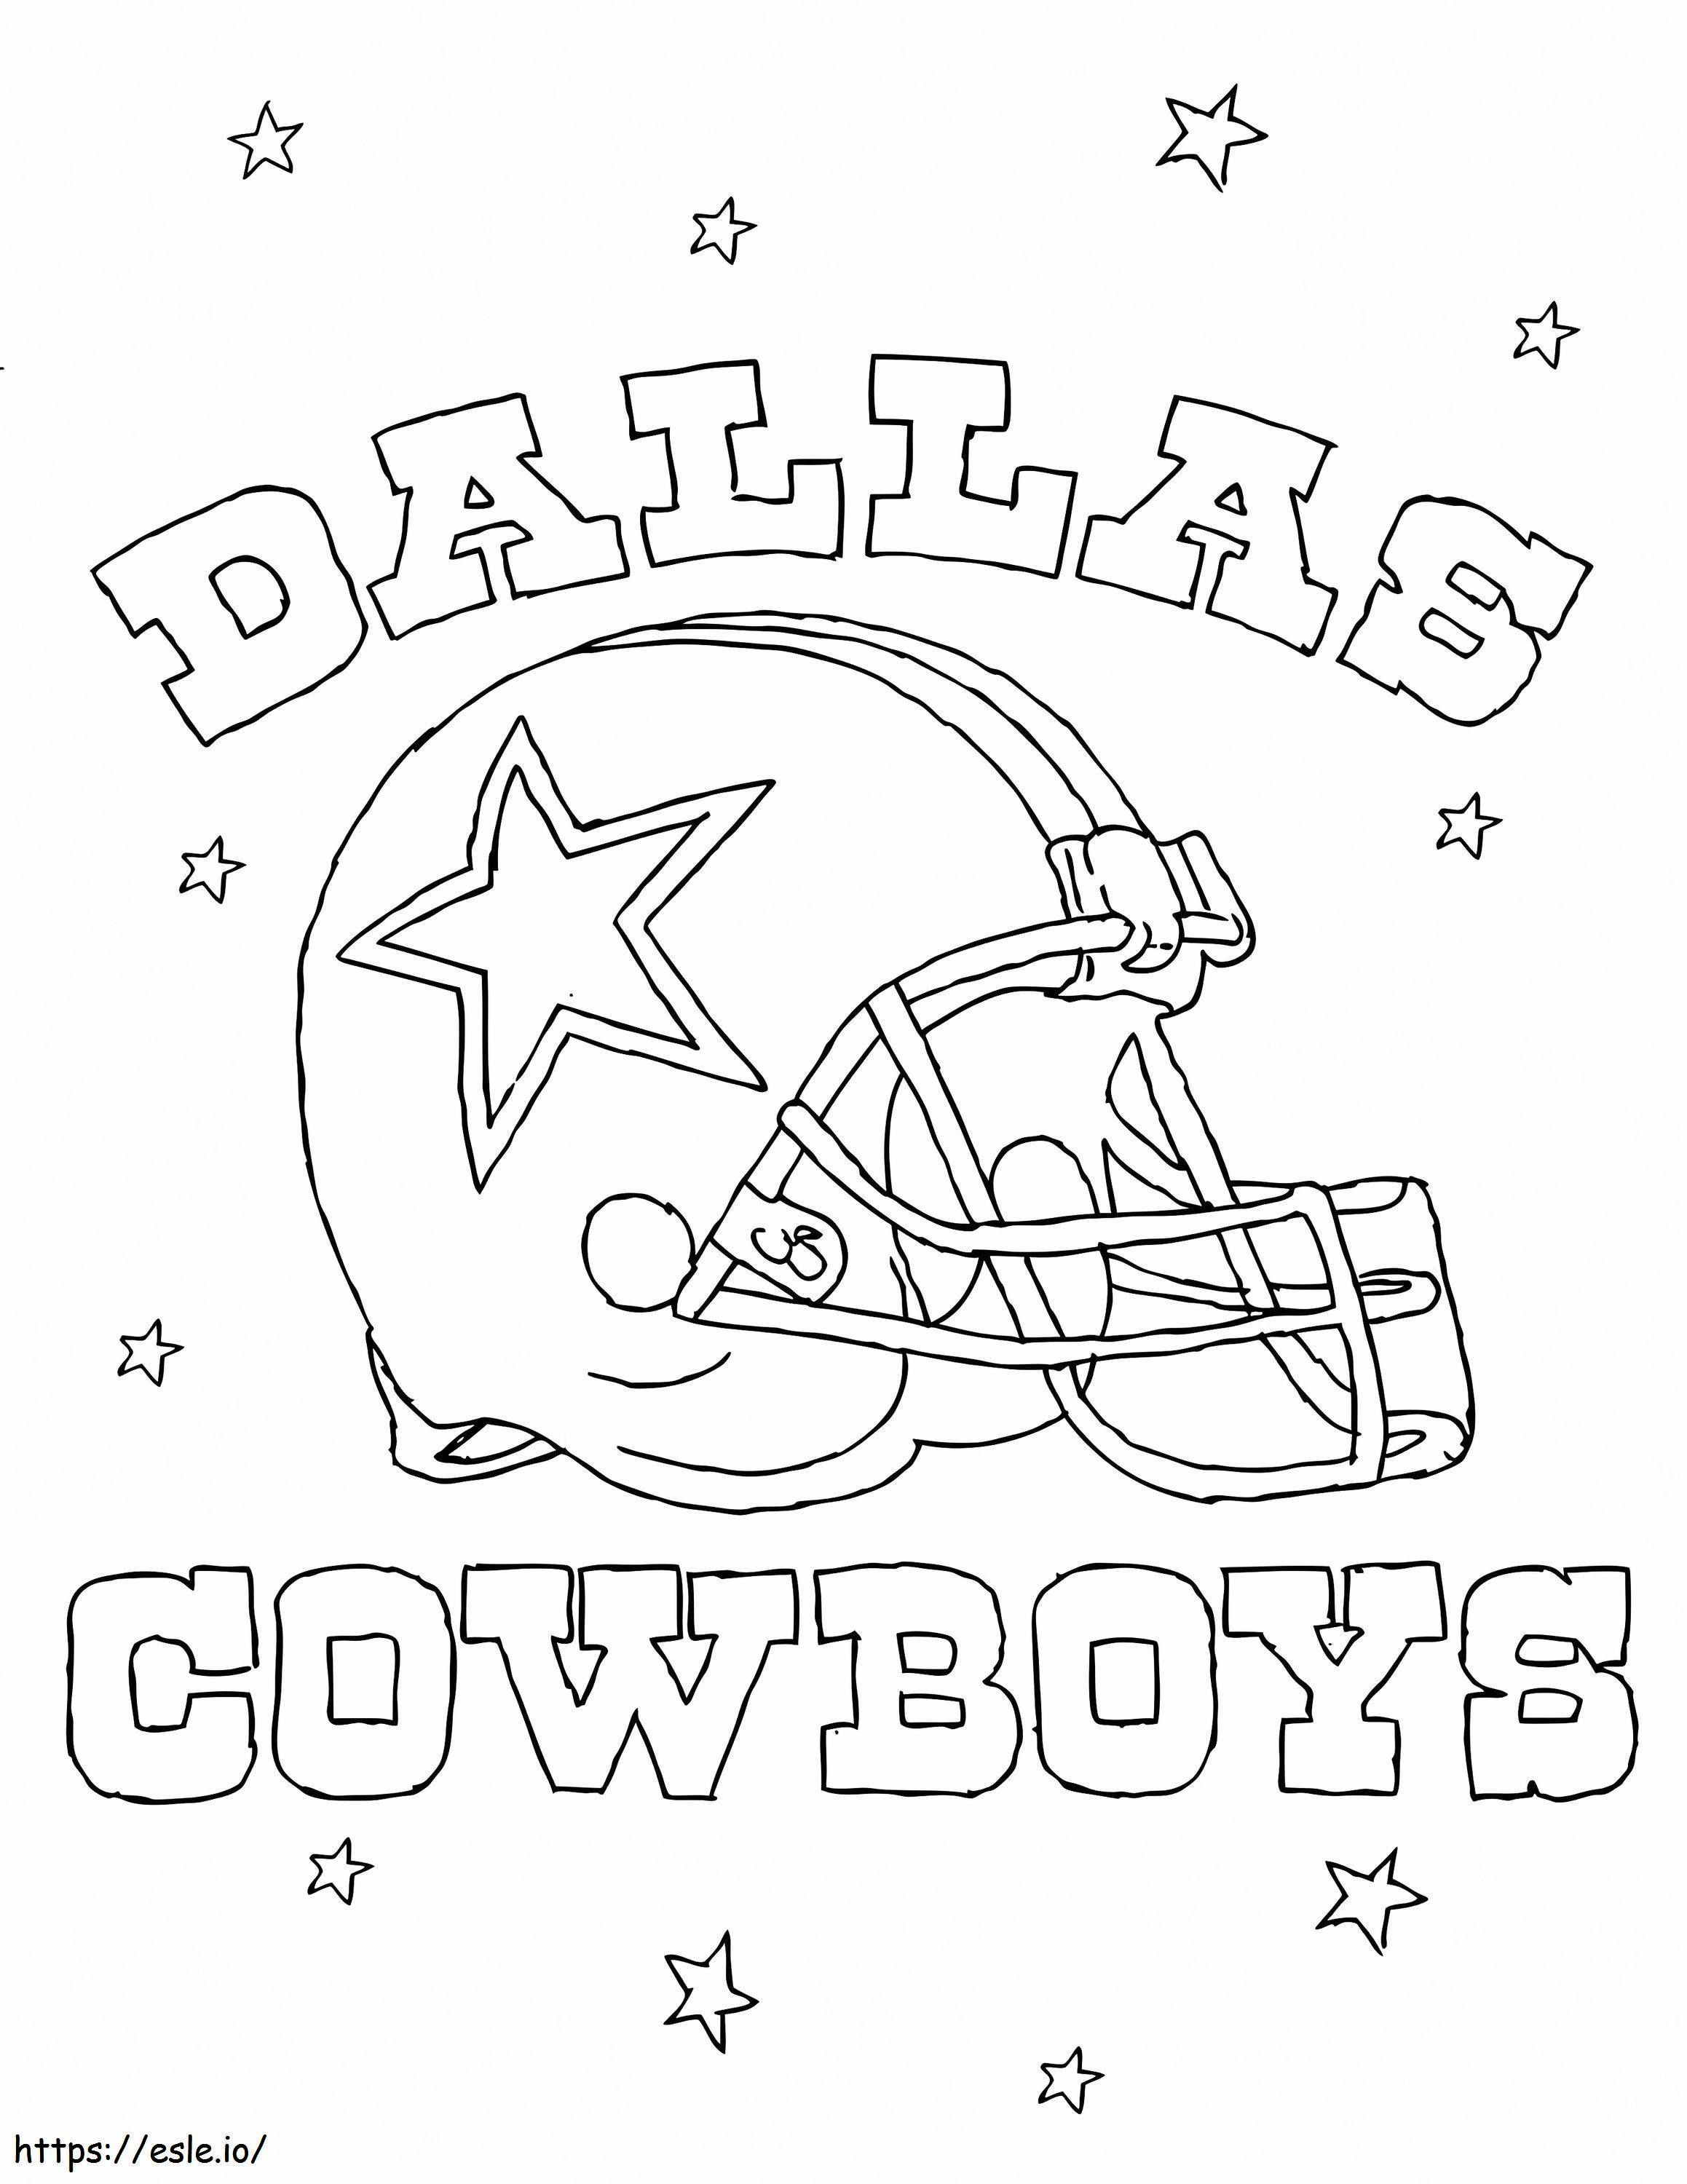 Dallas Cowboys kleurplaat kleurplaat